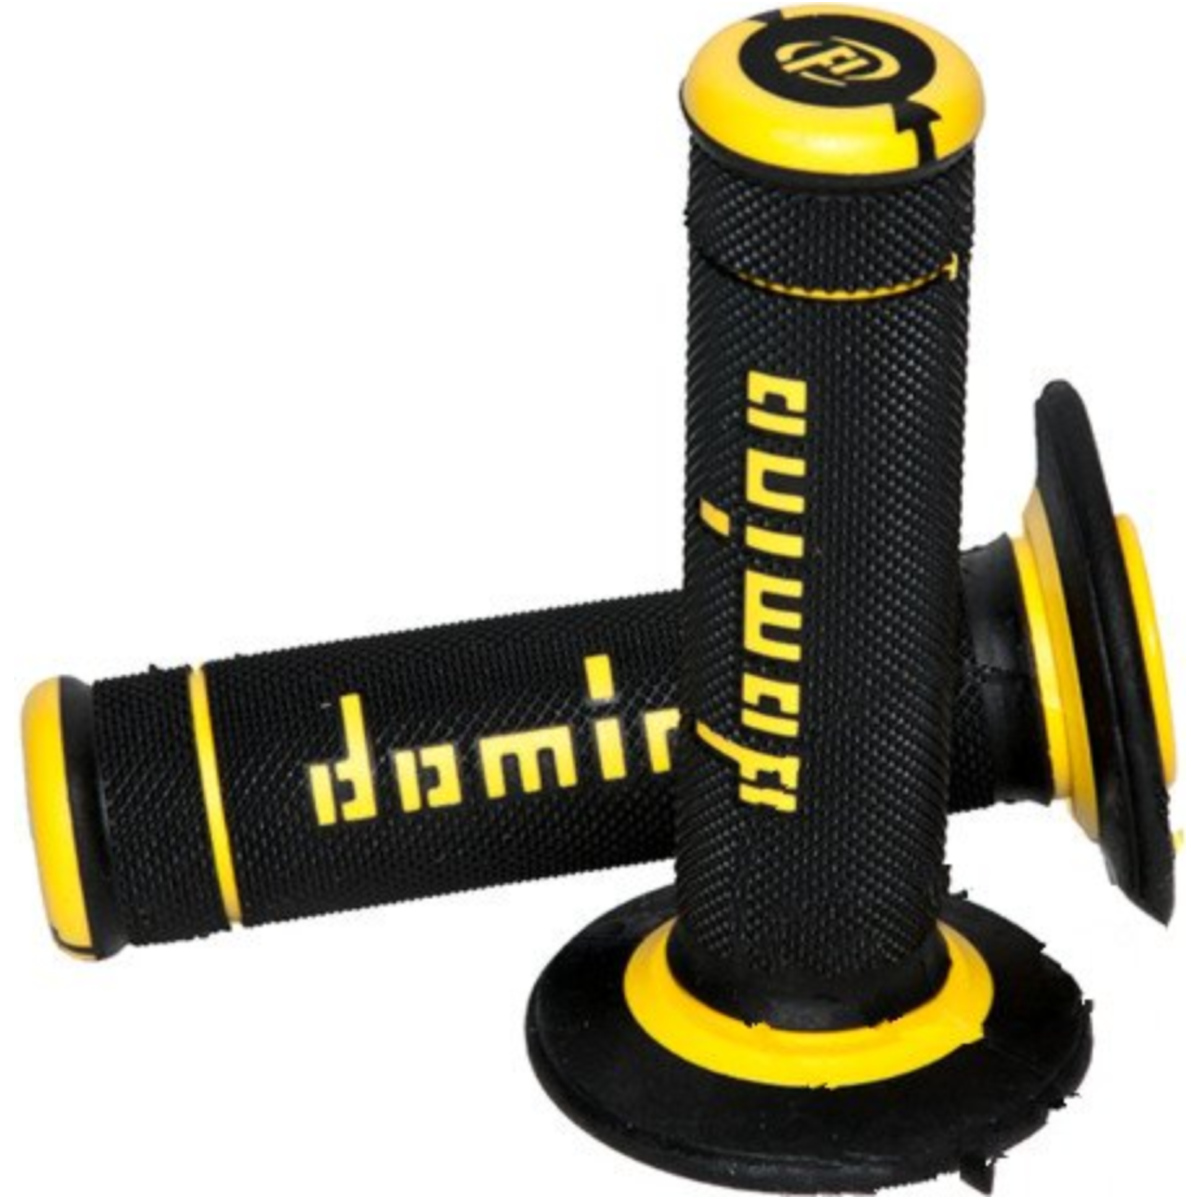 Domino a19041c4740a7-0 lenkergriffe griffgummi schwarz/gelb von Domino